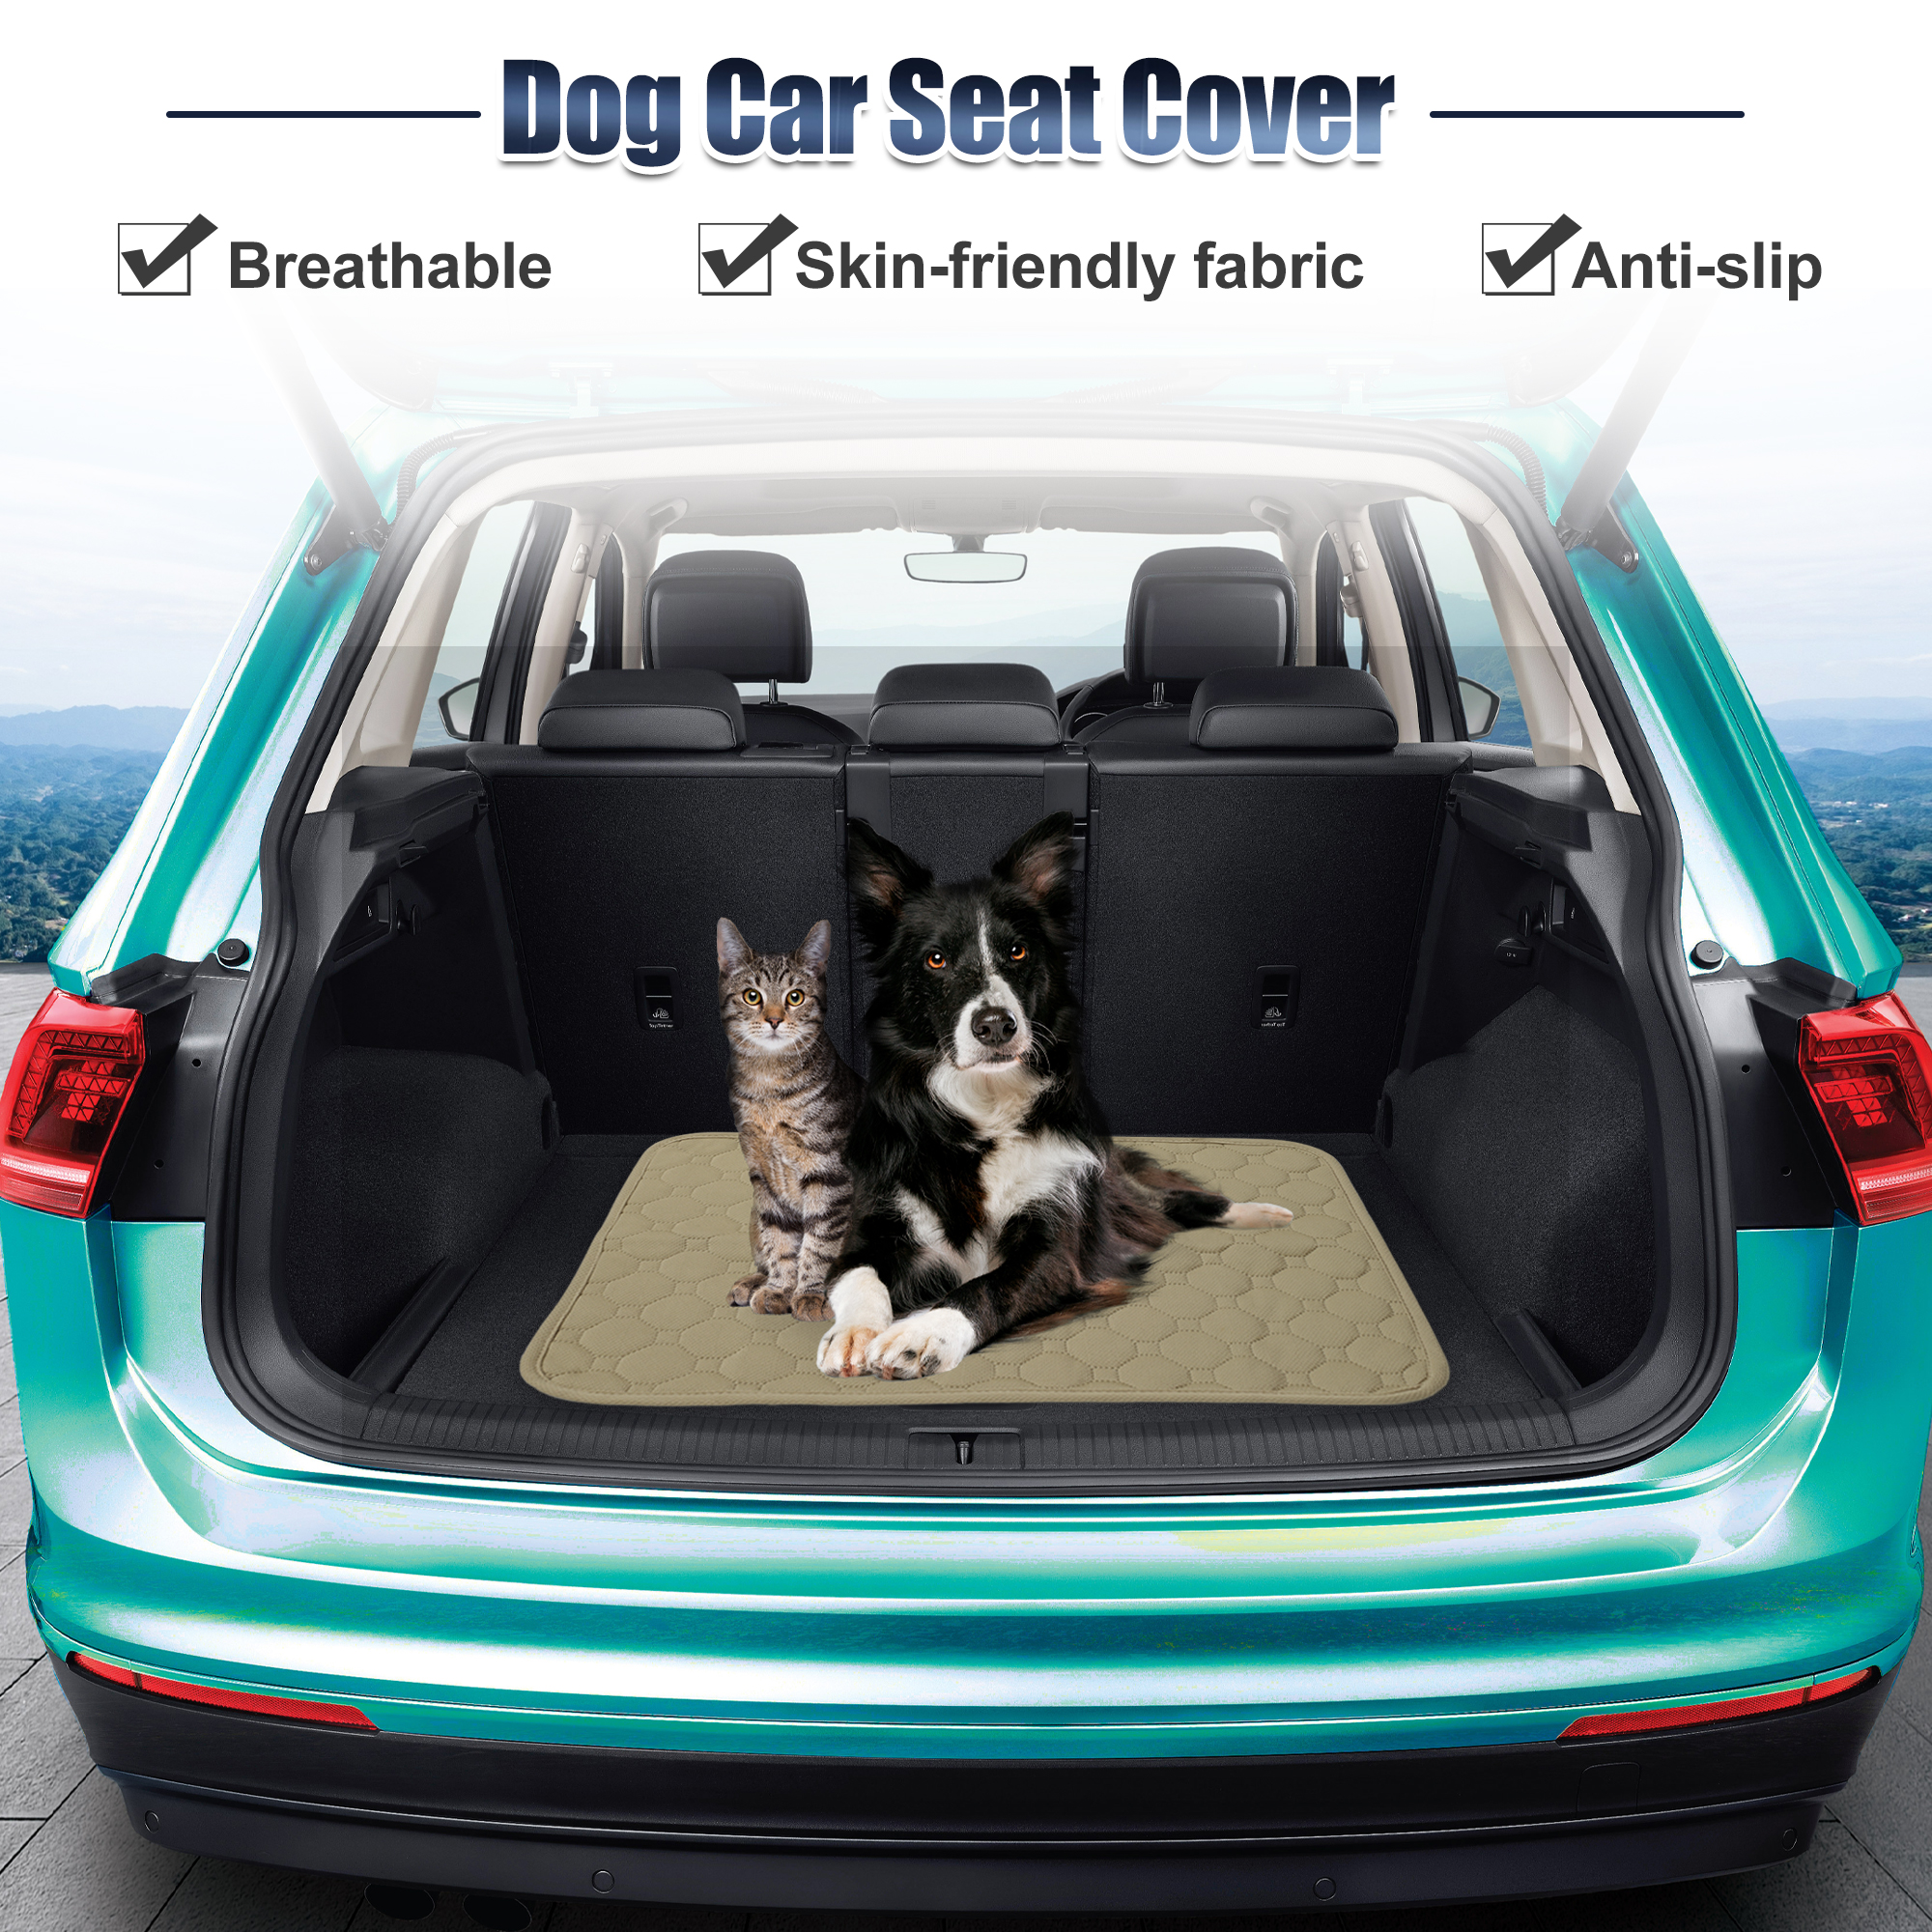 Unique Bargains Dog Seat Cover Reuse Nonslip Pet Car Seat Cover XS 50x35cm Khaki for Most Car